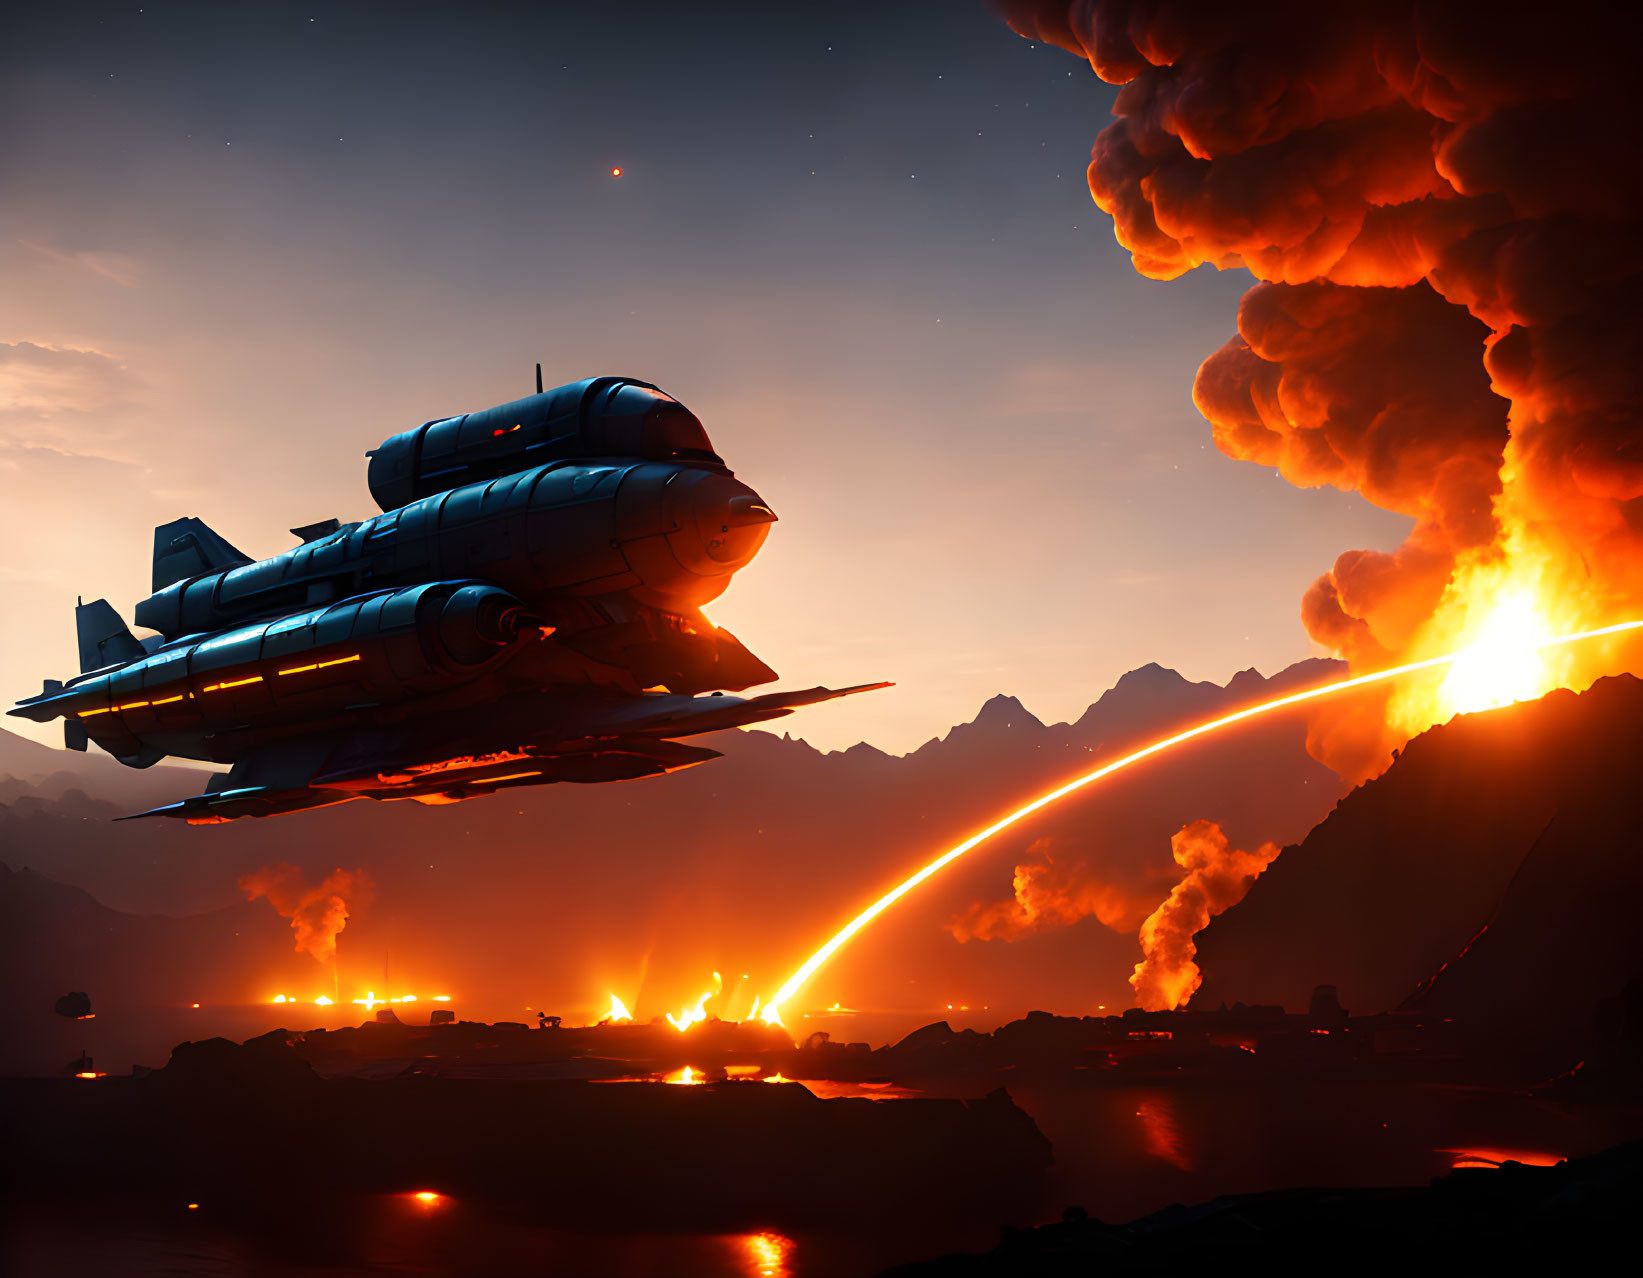 Spacecraft flying over erupting volcano landscape at dusk